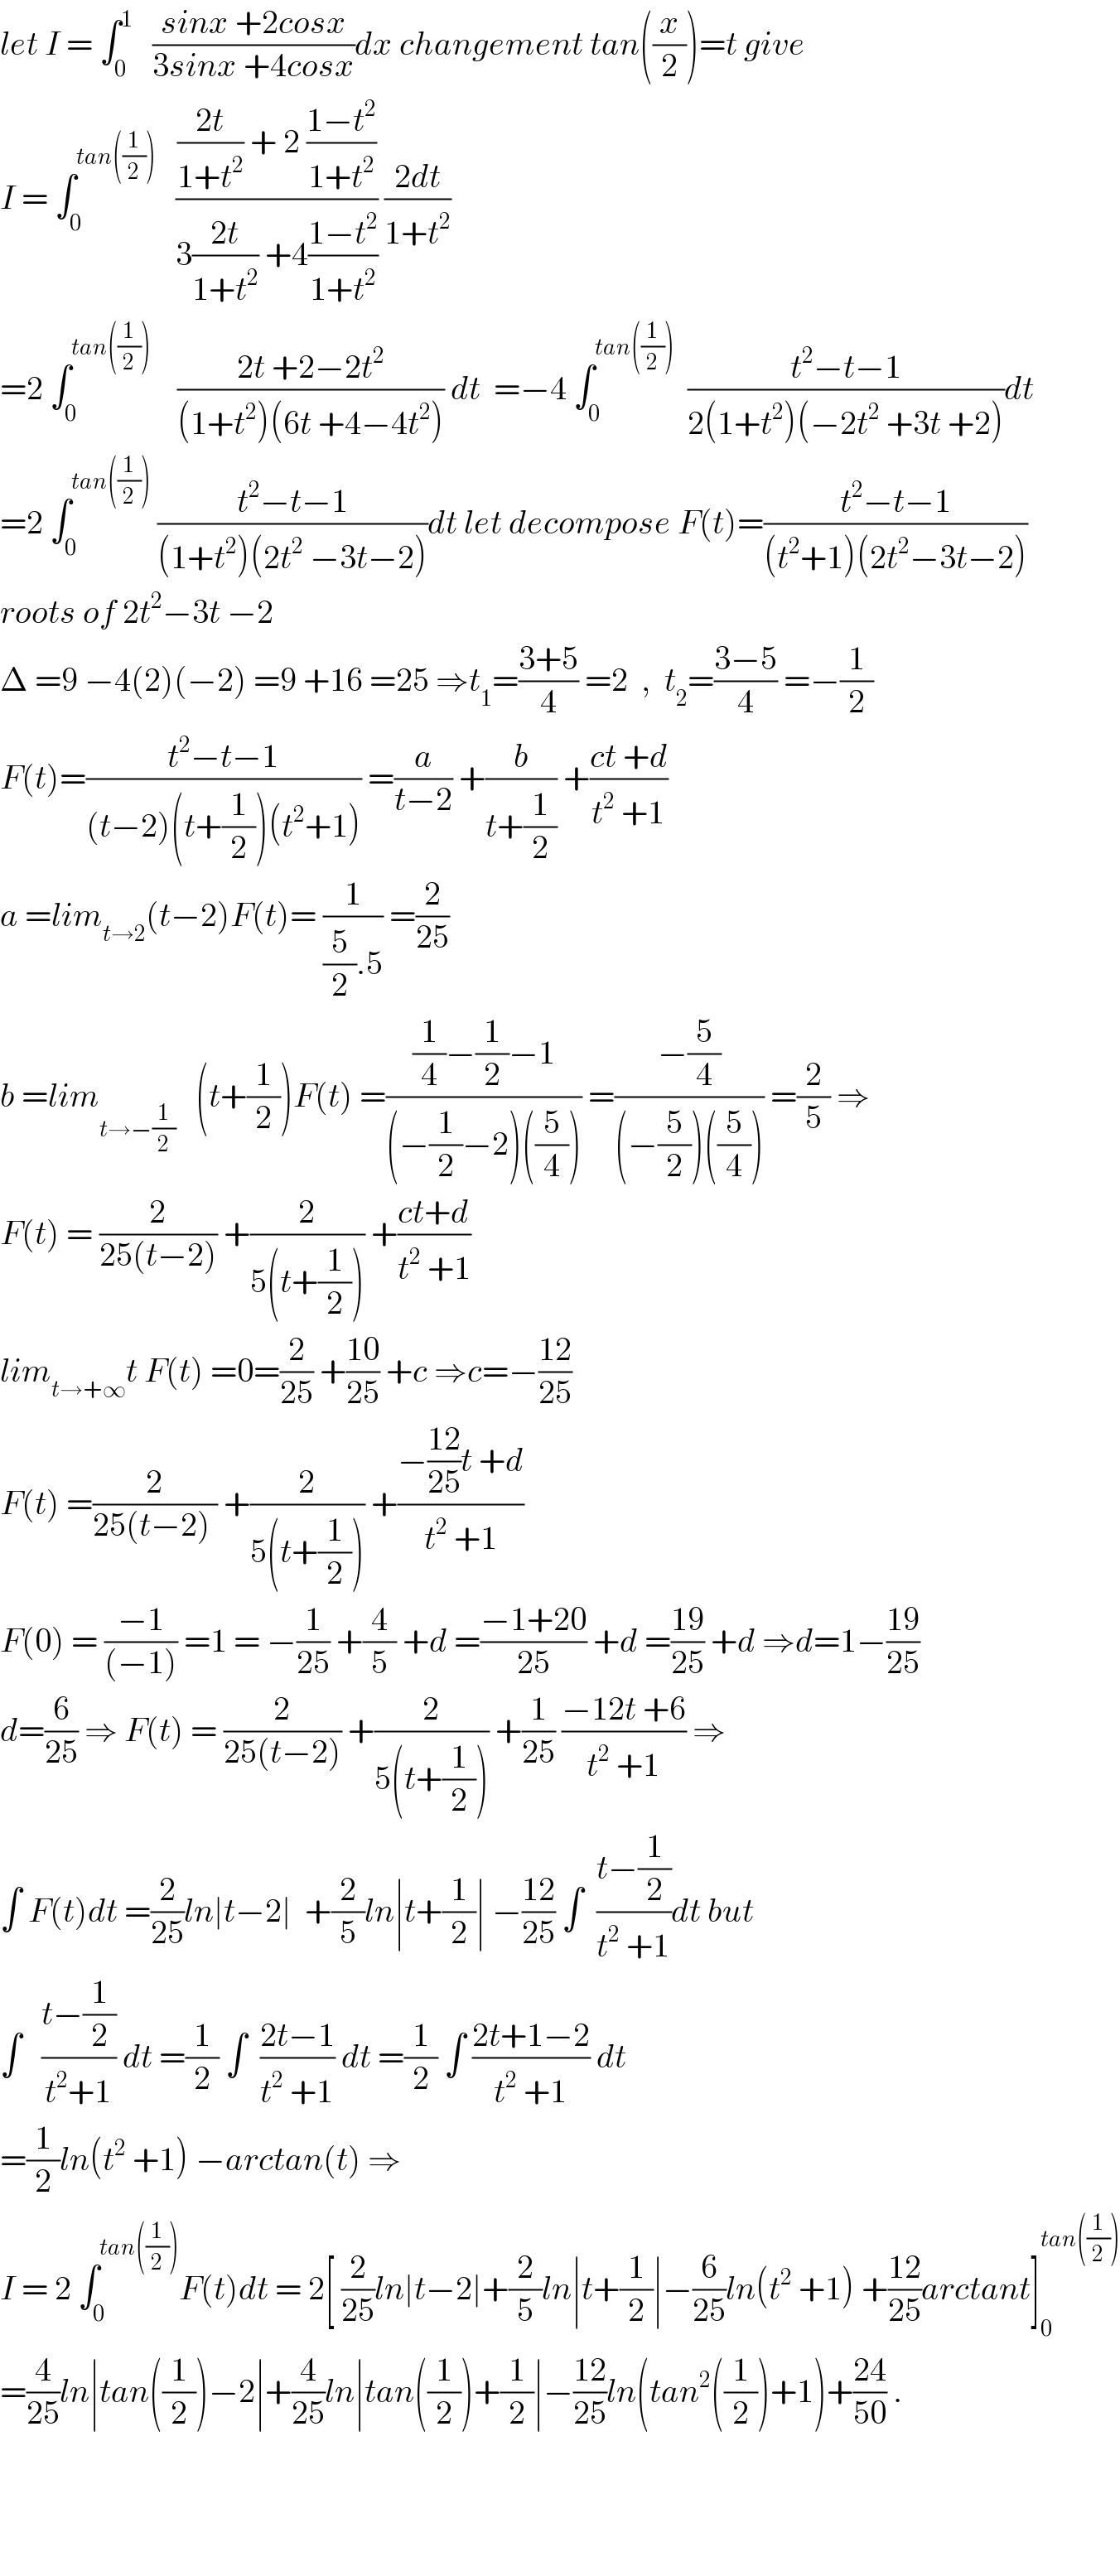 let I = ∫_0 ^1    ((sinx +2cosx)/(3sinx +4cosx))dx changement tan((x/2))=t give  I = ∫_0 ^(tan((1/2)))    ((((2t)/(1+t^2 )) + 2 ((1−t^2 )/(1+t^2 )))/(3((2t)/(1+t^2 )) +4((1−t^2 )/(1+t^2 )))) ((2dt)/(1+t^2 ))  =2 ∫_0 ^(tan((1/2)))     ((2t +2−2t^2 )/((1+t^2 )(6t +4−4t^2 ))) dt  =−4 ∫_0 ^(tan((1/2)))   ((t^2 −t−1)/(2(1+t^2 )(−2t^2  +3t +2)))dt  =2 ∫_0 ^(tan((1/2)))  ((t^2 −t−1)/((1+t^2 )(2t^2  −3t−2)))dt let decompose F(t)=((t^2 −t−1)/((t^2 +1)(2t^2 −3t−2)))  roots of 2t^2 −3t −2  Δ =9 −4(2)(−2) =9 +16 =25 ⇒t_1 =((3+5)/4) =2  ,  t_2 =((3−5)/4) =−(1/2)  F(t)=((t^2 −t−1)/((t−2)(t+(1/2))(t^2 +1))) =(a/(t−2)) +(b/(t+(1/2))) +((ct +d)/(t^2  +1))  a =lim_(t→2) (t−2)F(t)= (1/((5/2).5)) =(2/(25))  b =lim_(t→−(1/2))    (t+(1/2))F(t) =(((1/4)−(1/2)−1)/((−(1/2)−2)((5/4)))) =((−(5/4))/((−(5/2))((5/4)))) =(2/5) ⇒  F(t) = (2/(25(t−2))) +(2/(5(t+(1/2)))) +((ct+d)/(t^2  +1))  lim_(t→+∞) t F(t) =0=(2/(25)) +((10)/(25)) +c ⇒c=−((12)/(25))  F(t) =(2/(25(t−2) )) +(2/(5(t+(1/2)))) +((−((12)/(25))t +d)/(t^2  +1))  F(0) = ((−1)/((−1))) =1 = −(1/(25)) +(4/5) +d =((−1+20)/(25)) +d =((19)/(25)) +d ⇒d=1−((19)/(25))  d=(6/(25)) ⇒ F(t) = (2/(25(t−2))) +(2/(5(t+(1/2)))) +(1/(25)) ((−12t +6)/(t^2  +1)) ⇒  ∫ F(t)dt =(2/(25))ln∣t−2∣  +(2/5)ln∣t+(1/2)∣ −((12)/(25)) ∫  ((t−(1/2))/(t^2  +1))dt but  ∫   ((t−(1/2))/(t^2 +1)) dt =(1/2) ∫  ((2t−1)/(t^2  +1)) dt =(1/2) ∫ ((2t+1−2)/(t^2  +1)) dt  =(1/2)ln(t^2  +1) −arctan(t) ⇒  I = 2 ∫_0 ^(tan((1/2))) F(t)dt = 2[ (2/(25))ln∣t−2∣+(2/5)ln∣t+(1/2)∣−(6/(25))ln(t^2  +1) +((12)/(25))arctant]_0 ^(tan((1/2)))   =(4/(25))ln∣tan((1/2))−2∣+(4/(25))ln∣tan((1/2))+(1/2)∣−((12)/(25))ln(tan^2 ((1/2))+1)+((24)/(50)) .        